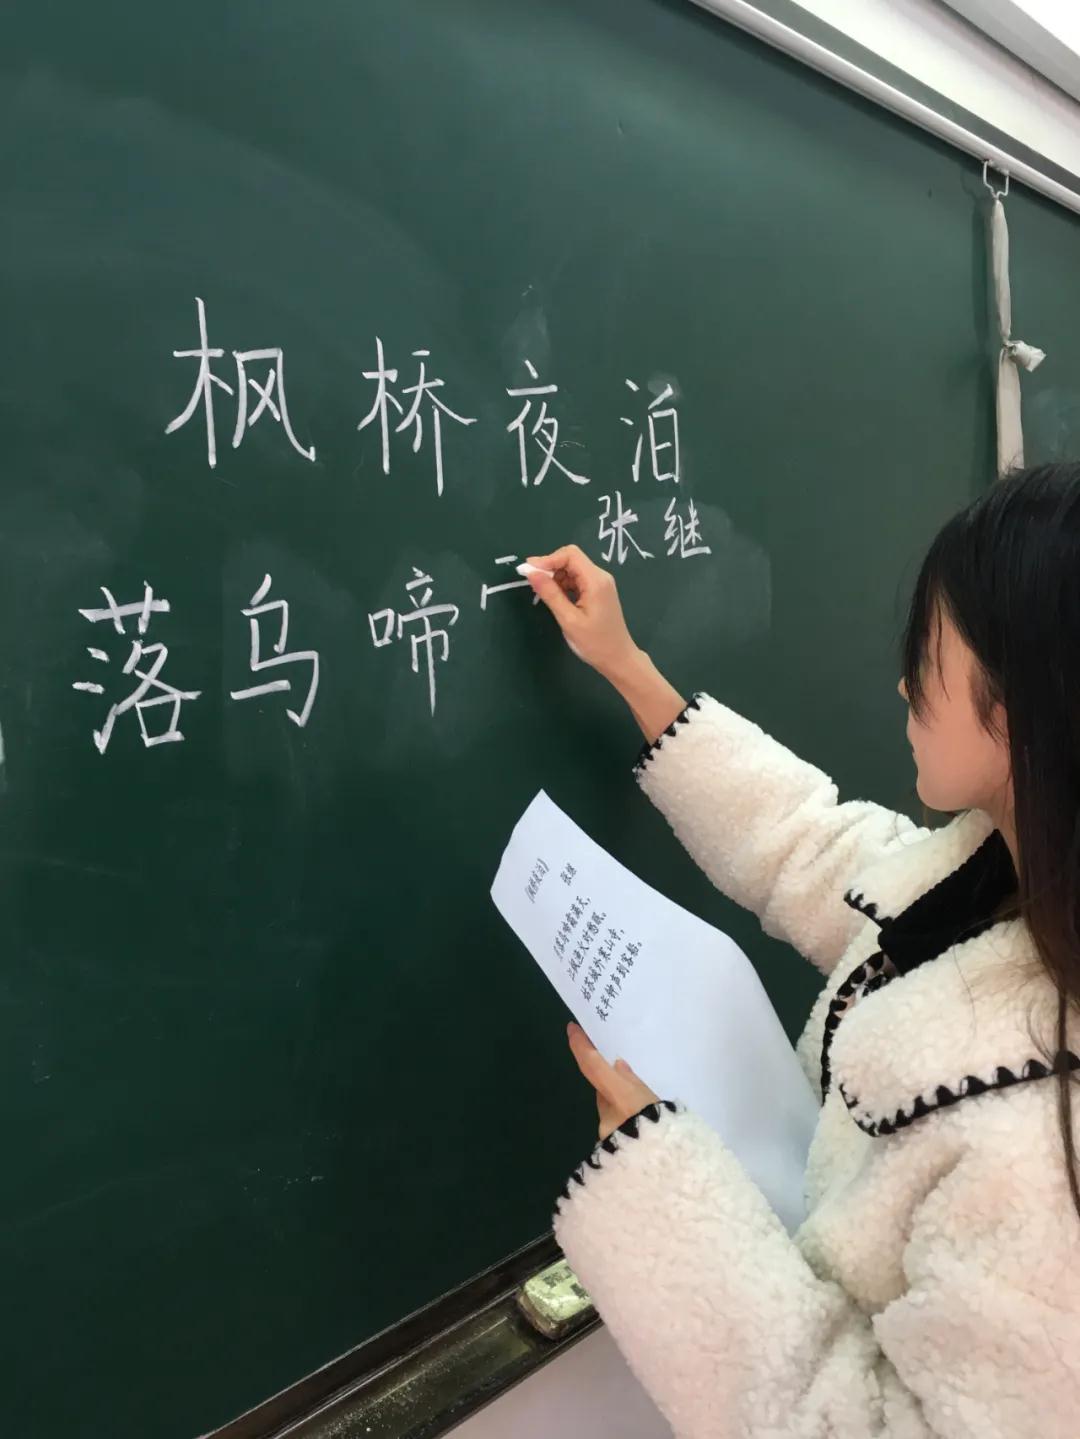  中加枫华国际学校小学部优秀英语教师专访